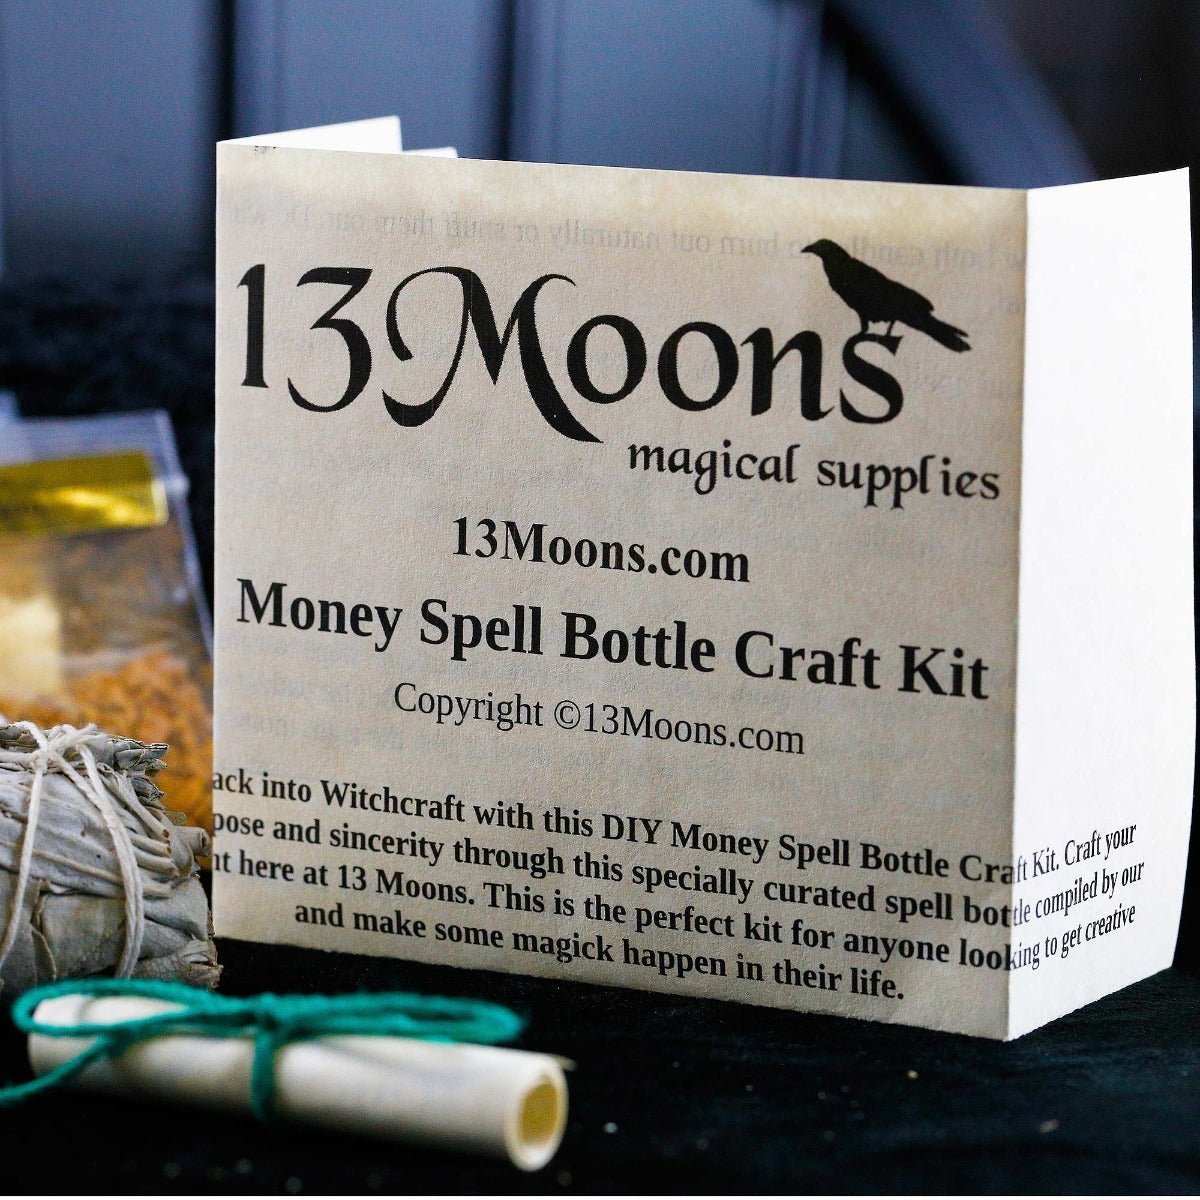 Money Spell Bottle Craft Kit - 13 Moons